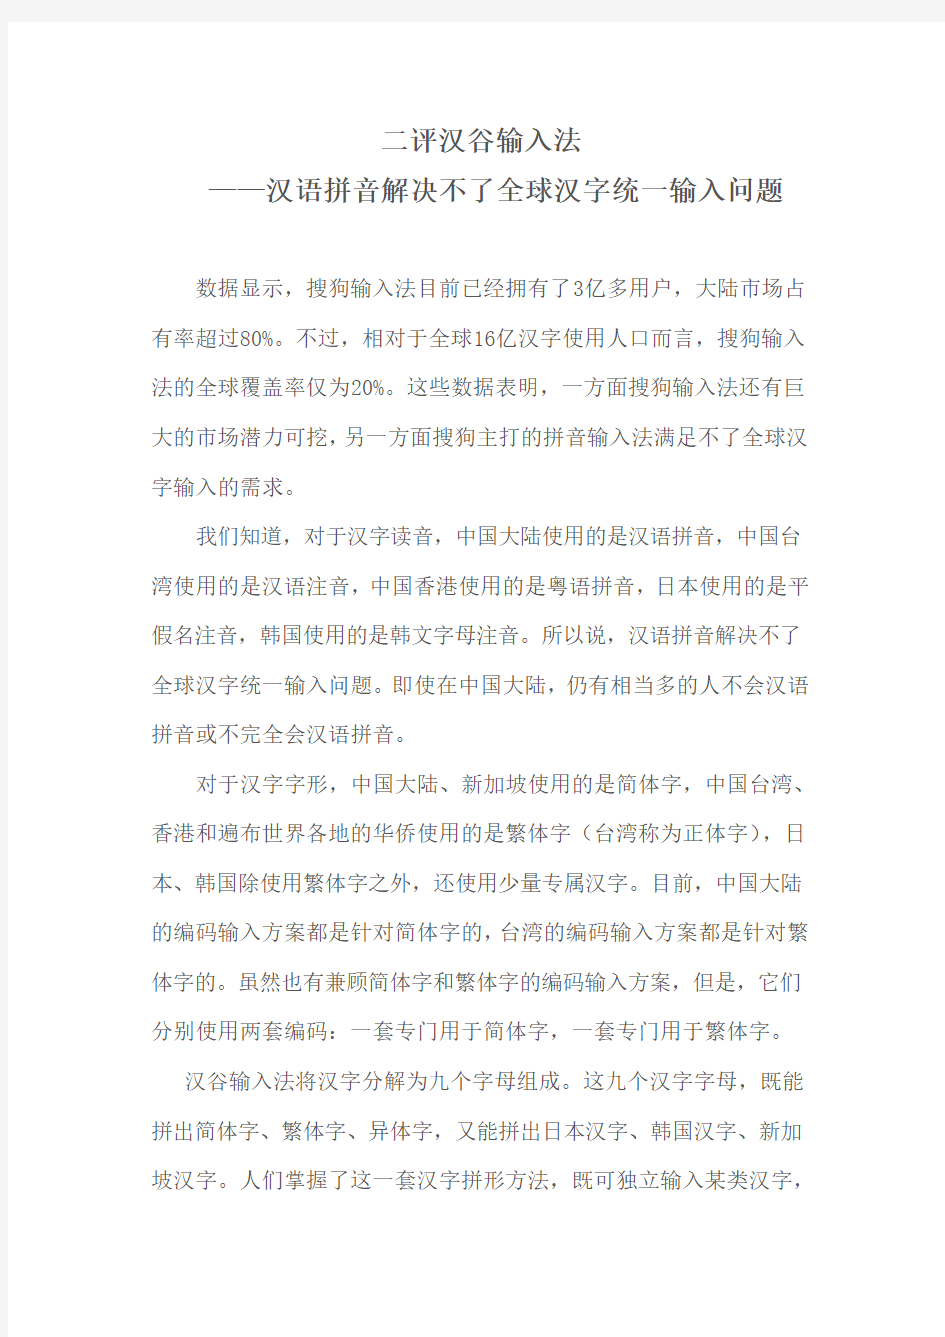 二评汉谷输入法——汉语拼音解决不了全球汉字统一输入问题